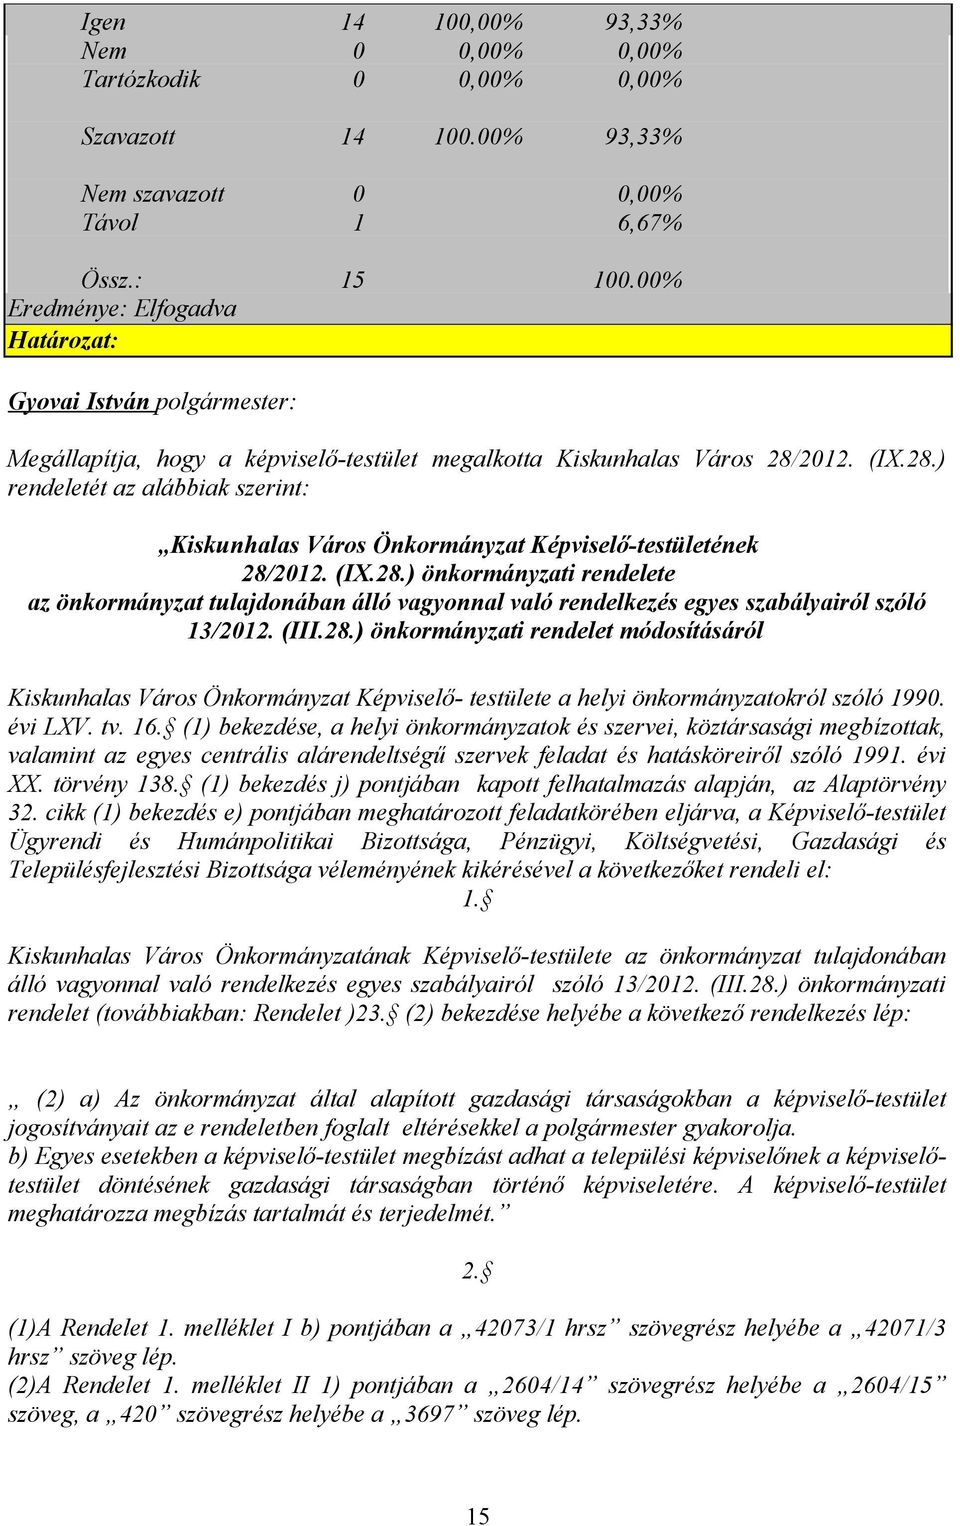 2012. (IX.28.) rendeletét az alábbiak szerint: Kiskunhalas Város Önkormányzat Képviselő-testületének 28/2012. (IX.28.) önkormányzati rendelete az önkormányzat tulajdonában álló vagyonnal való rendelkezés egyes szabályairól szóló 13/2012.